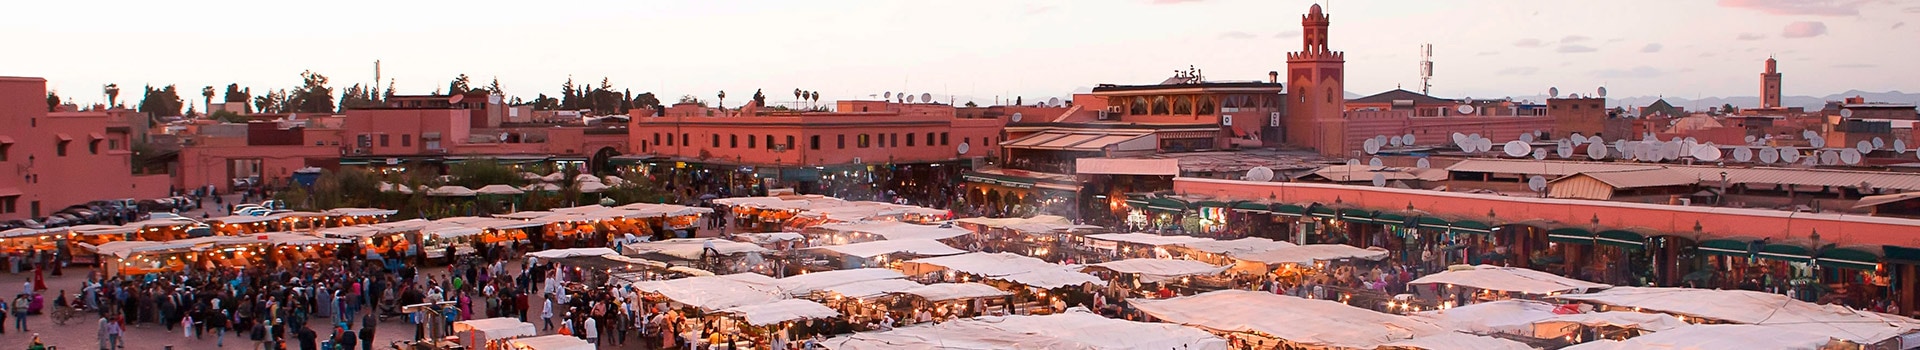 Santiago de Compostela - Marrakech